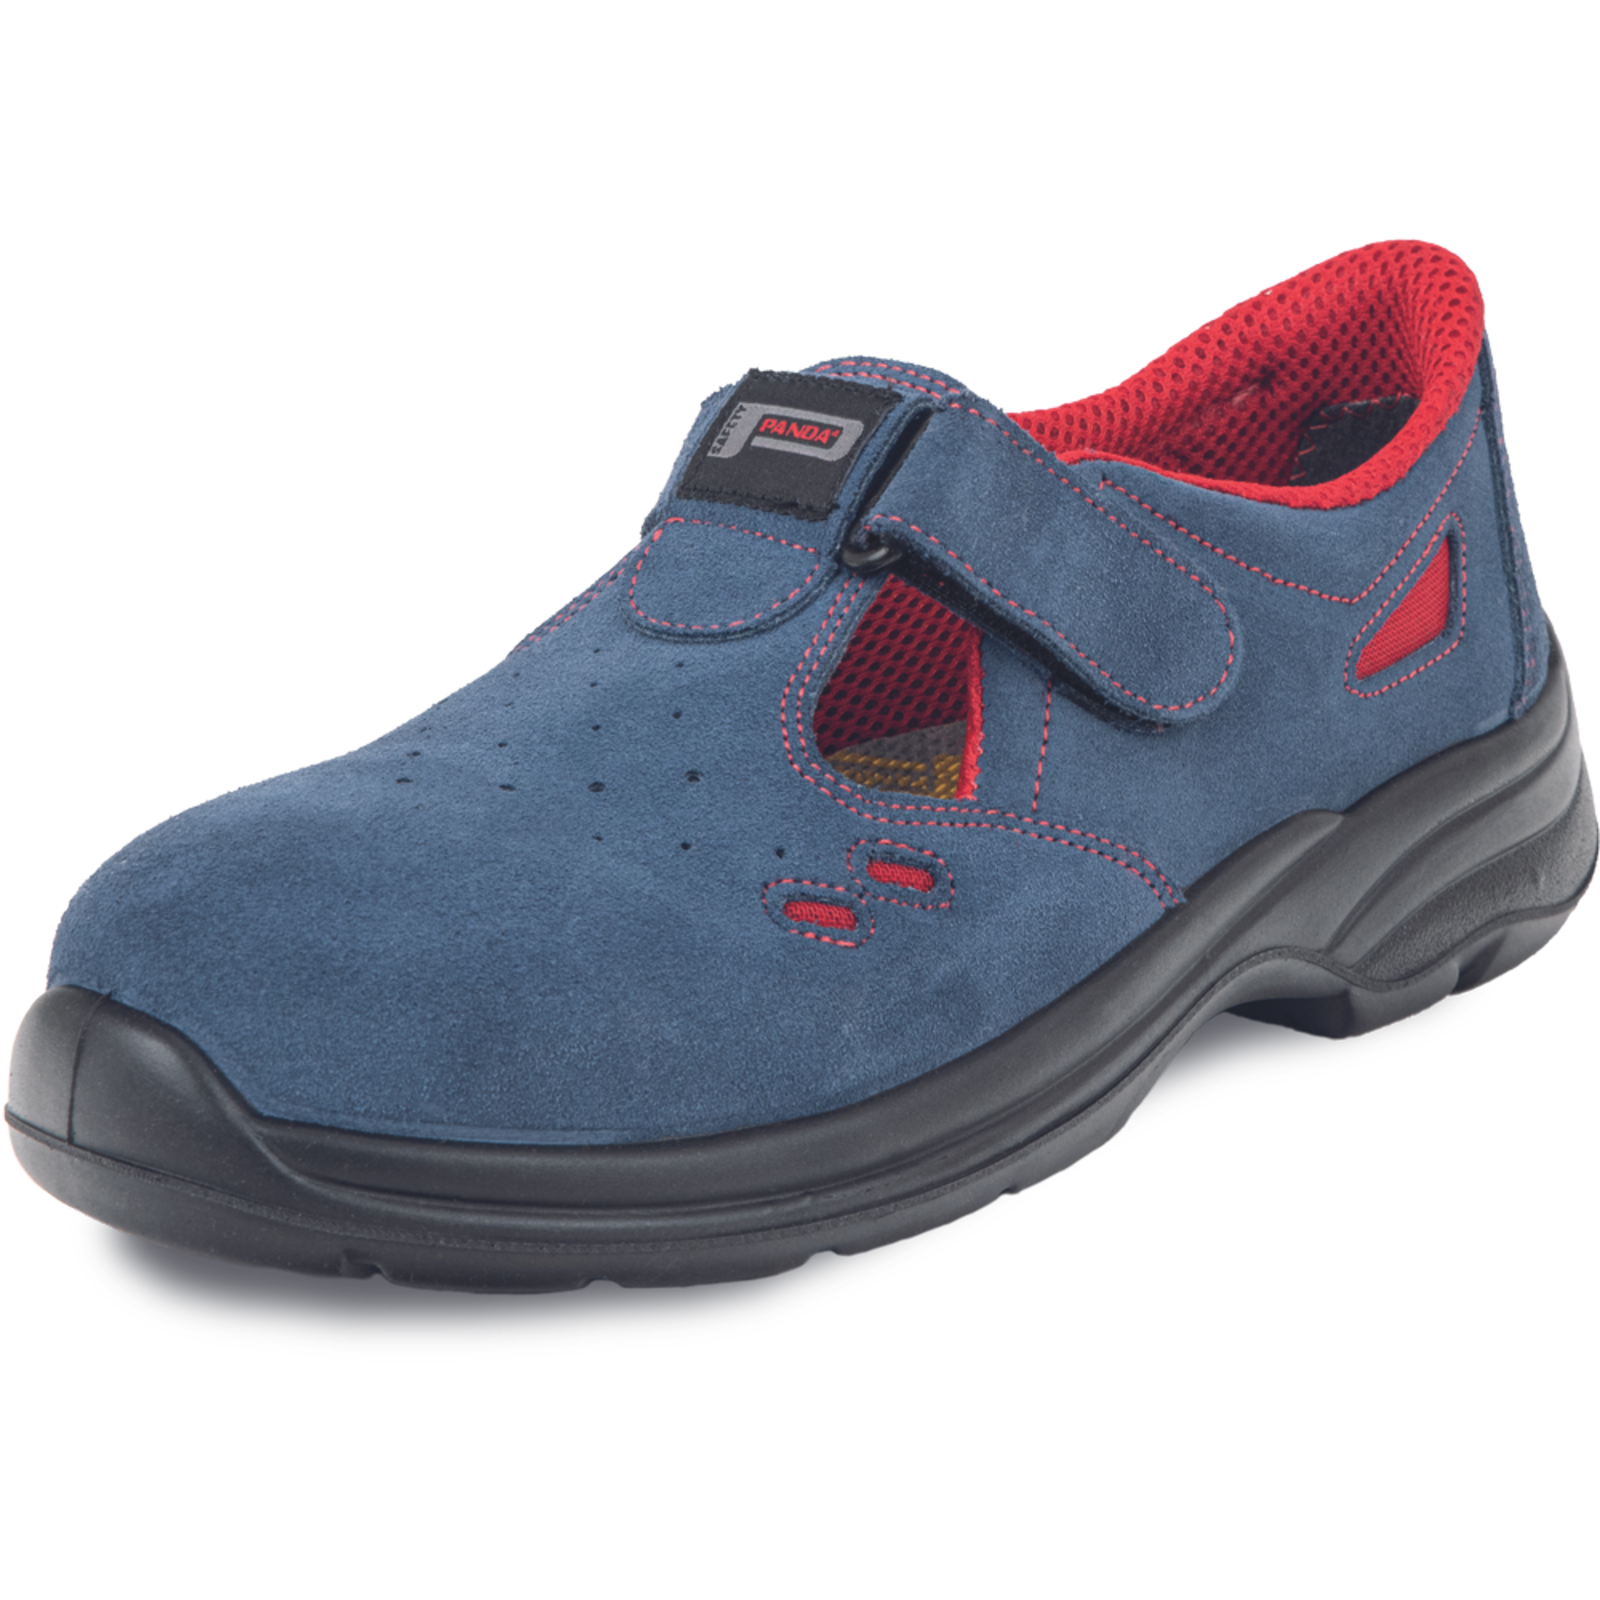 Pracovné bezpečnostné sandále Panda Ringo MF S1 SRC - veľkosť: 38, farba: modrá/červená